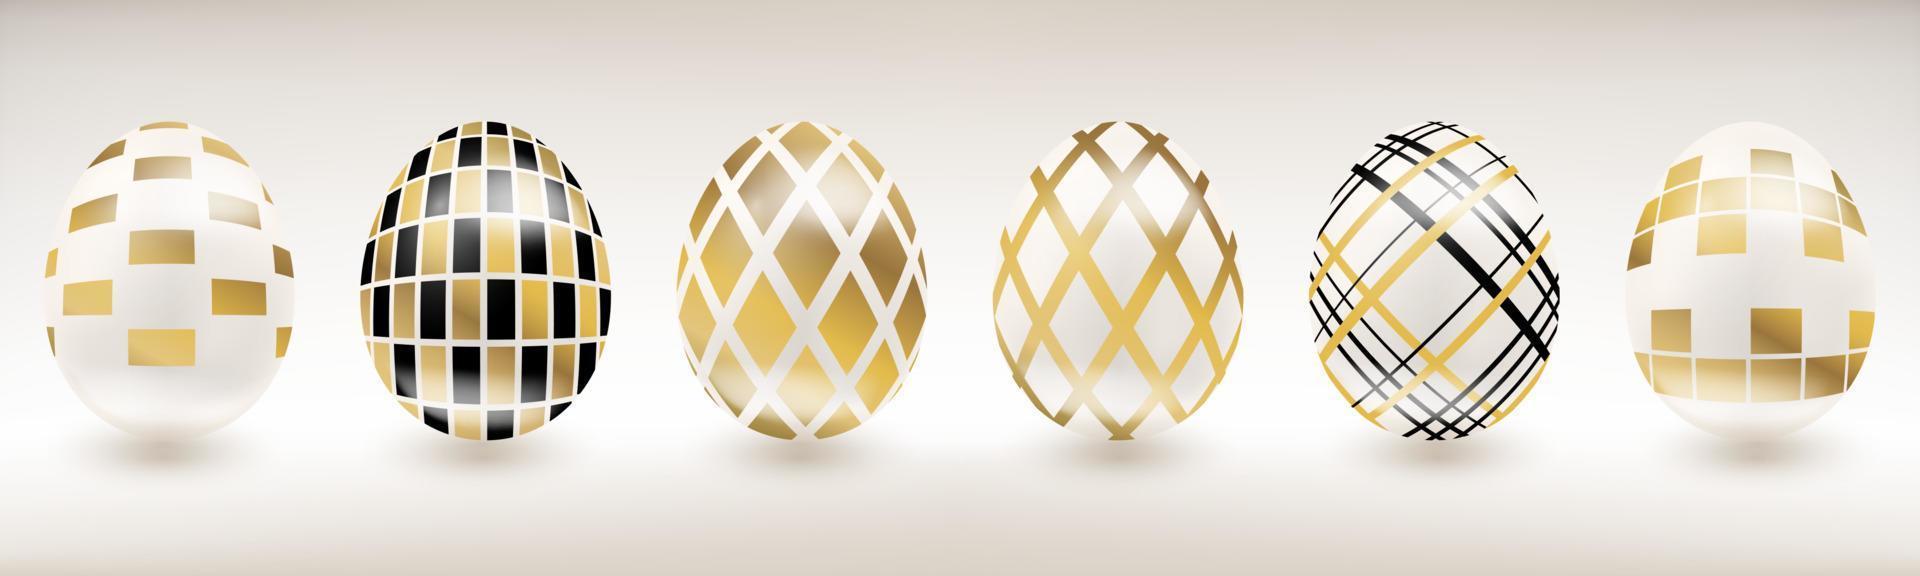 bianca porcellana Pasqua uovo con geometrico arredamento vettore